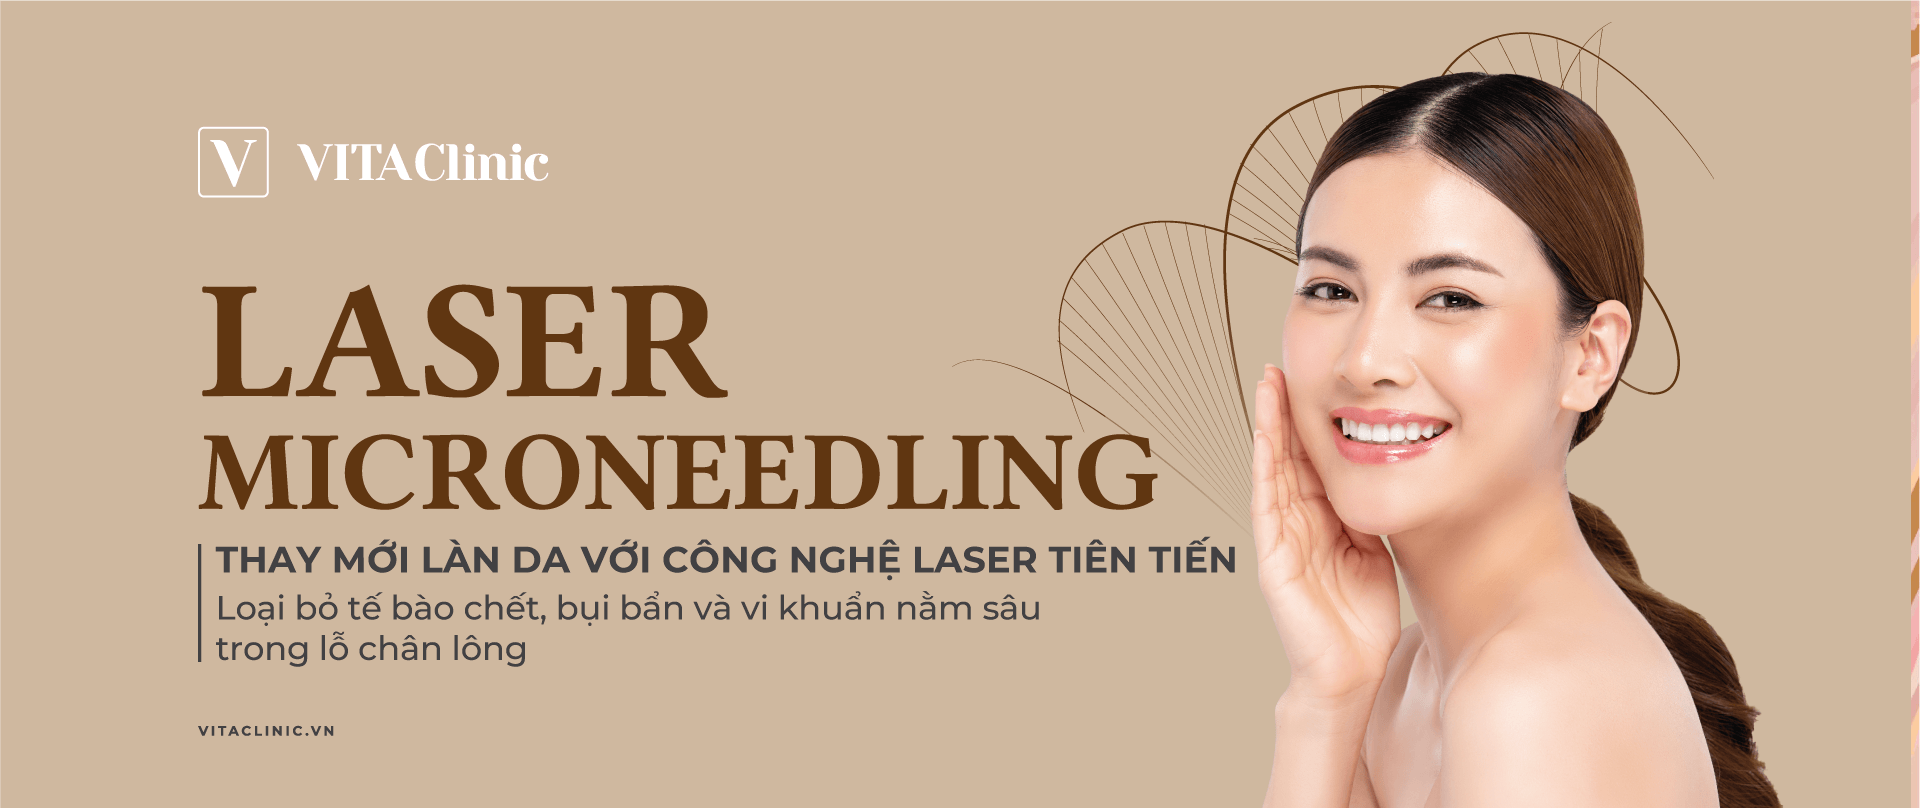 Laser Microneedling - giải pháp cho những ai đang tìm kiếm cách trị sẹo thâm hiệu quả